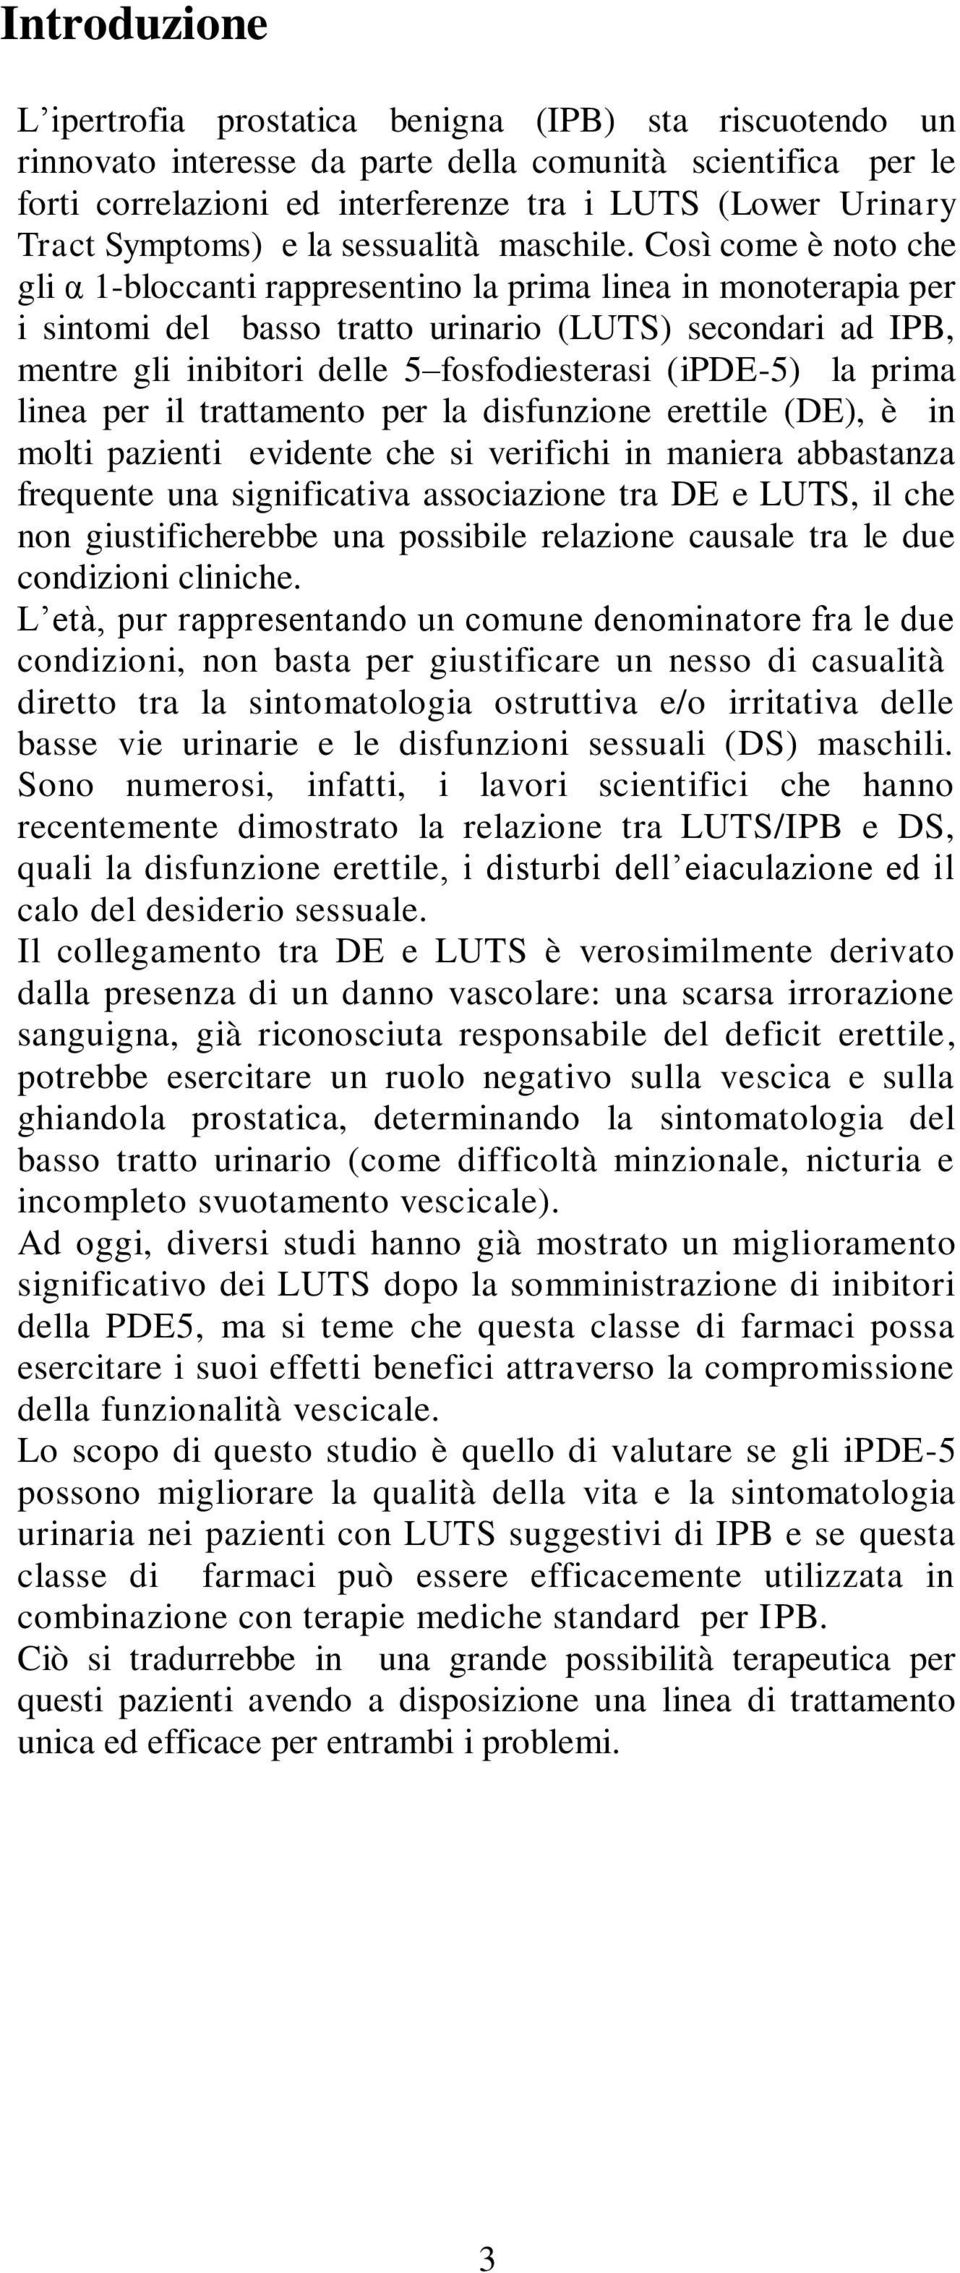 Così come è noto che gli α 1-bloccanti rappresentino la prima linea in monoterapia per i sintomi del basso tratto urinario (LUTS) secondari ad IPB, mentre gli inibitori delle 5 fosfodiesterasi